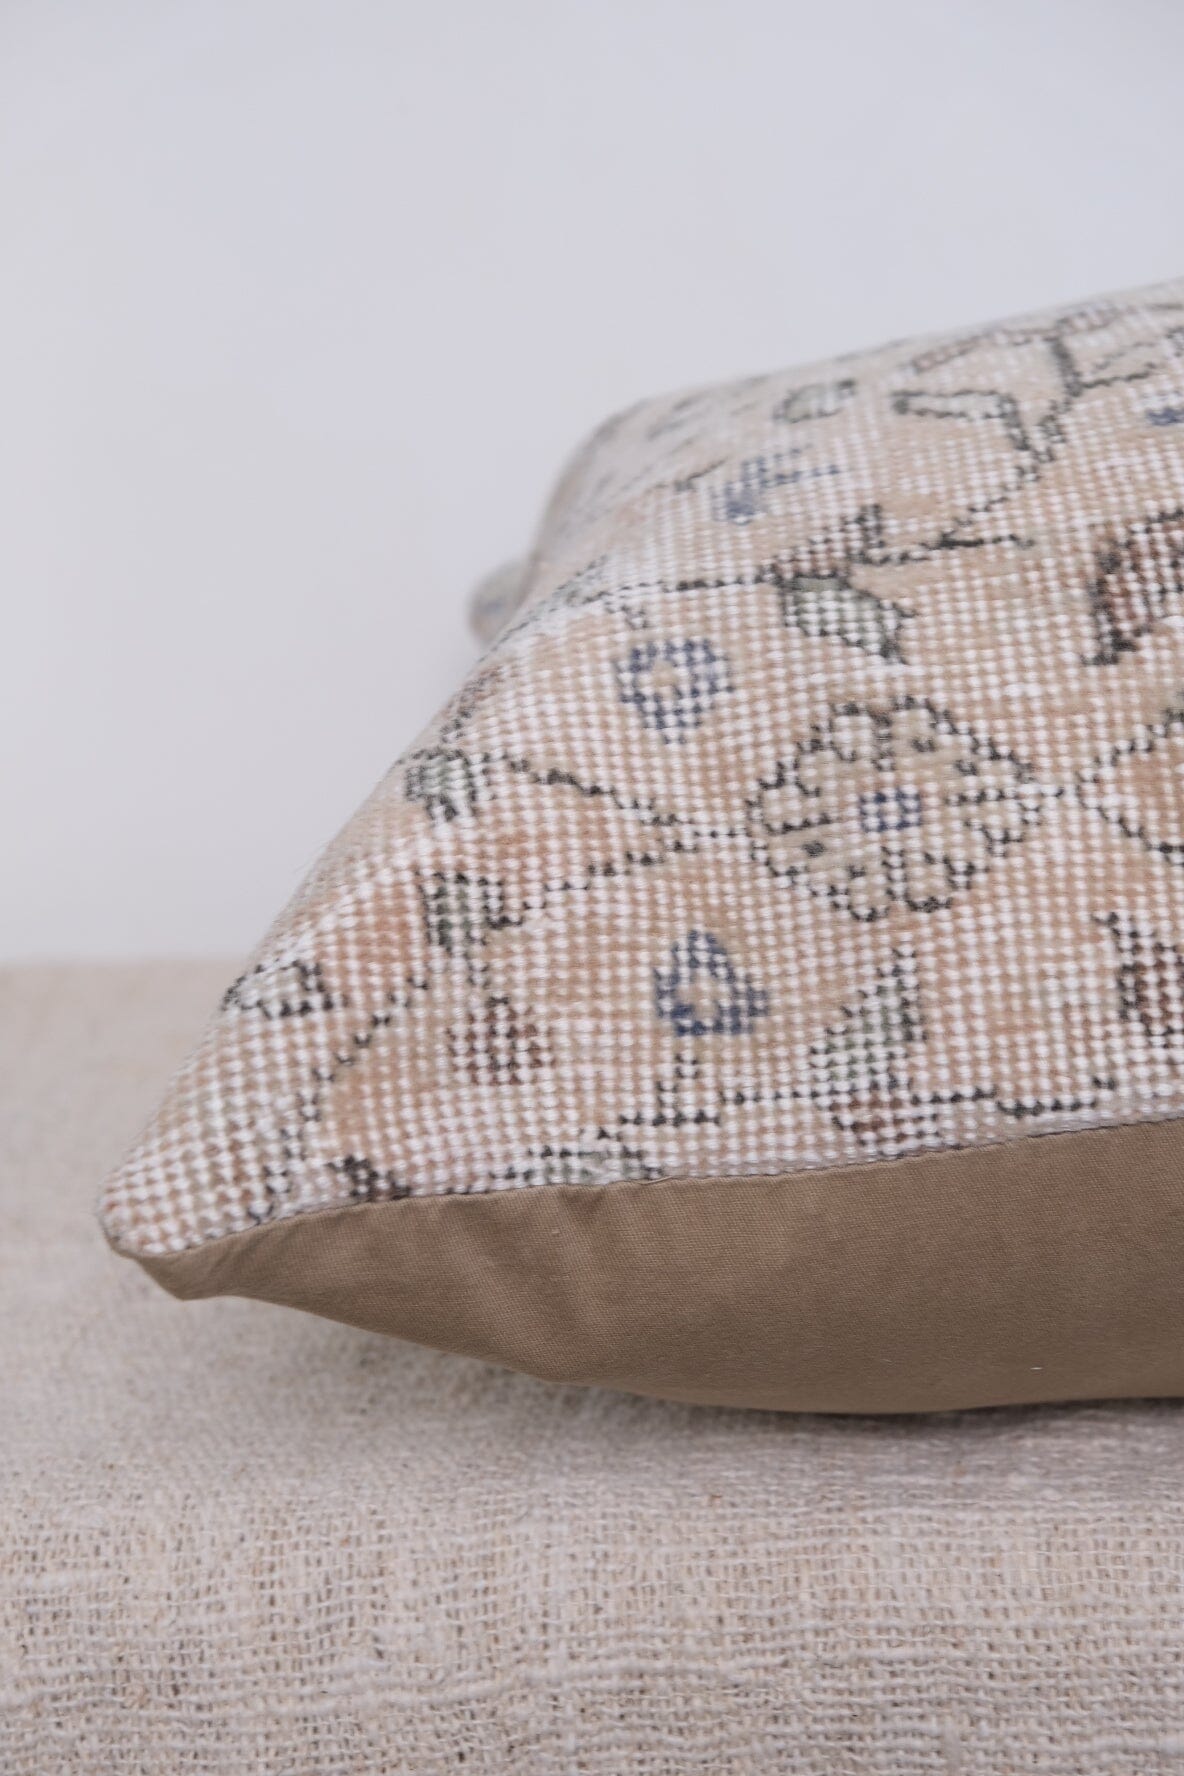 Sara Turkish Vintage Rug Pillow No.2 Kilim Pillow Twenty Third by Deanne 